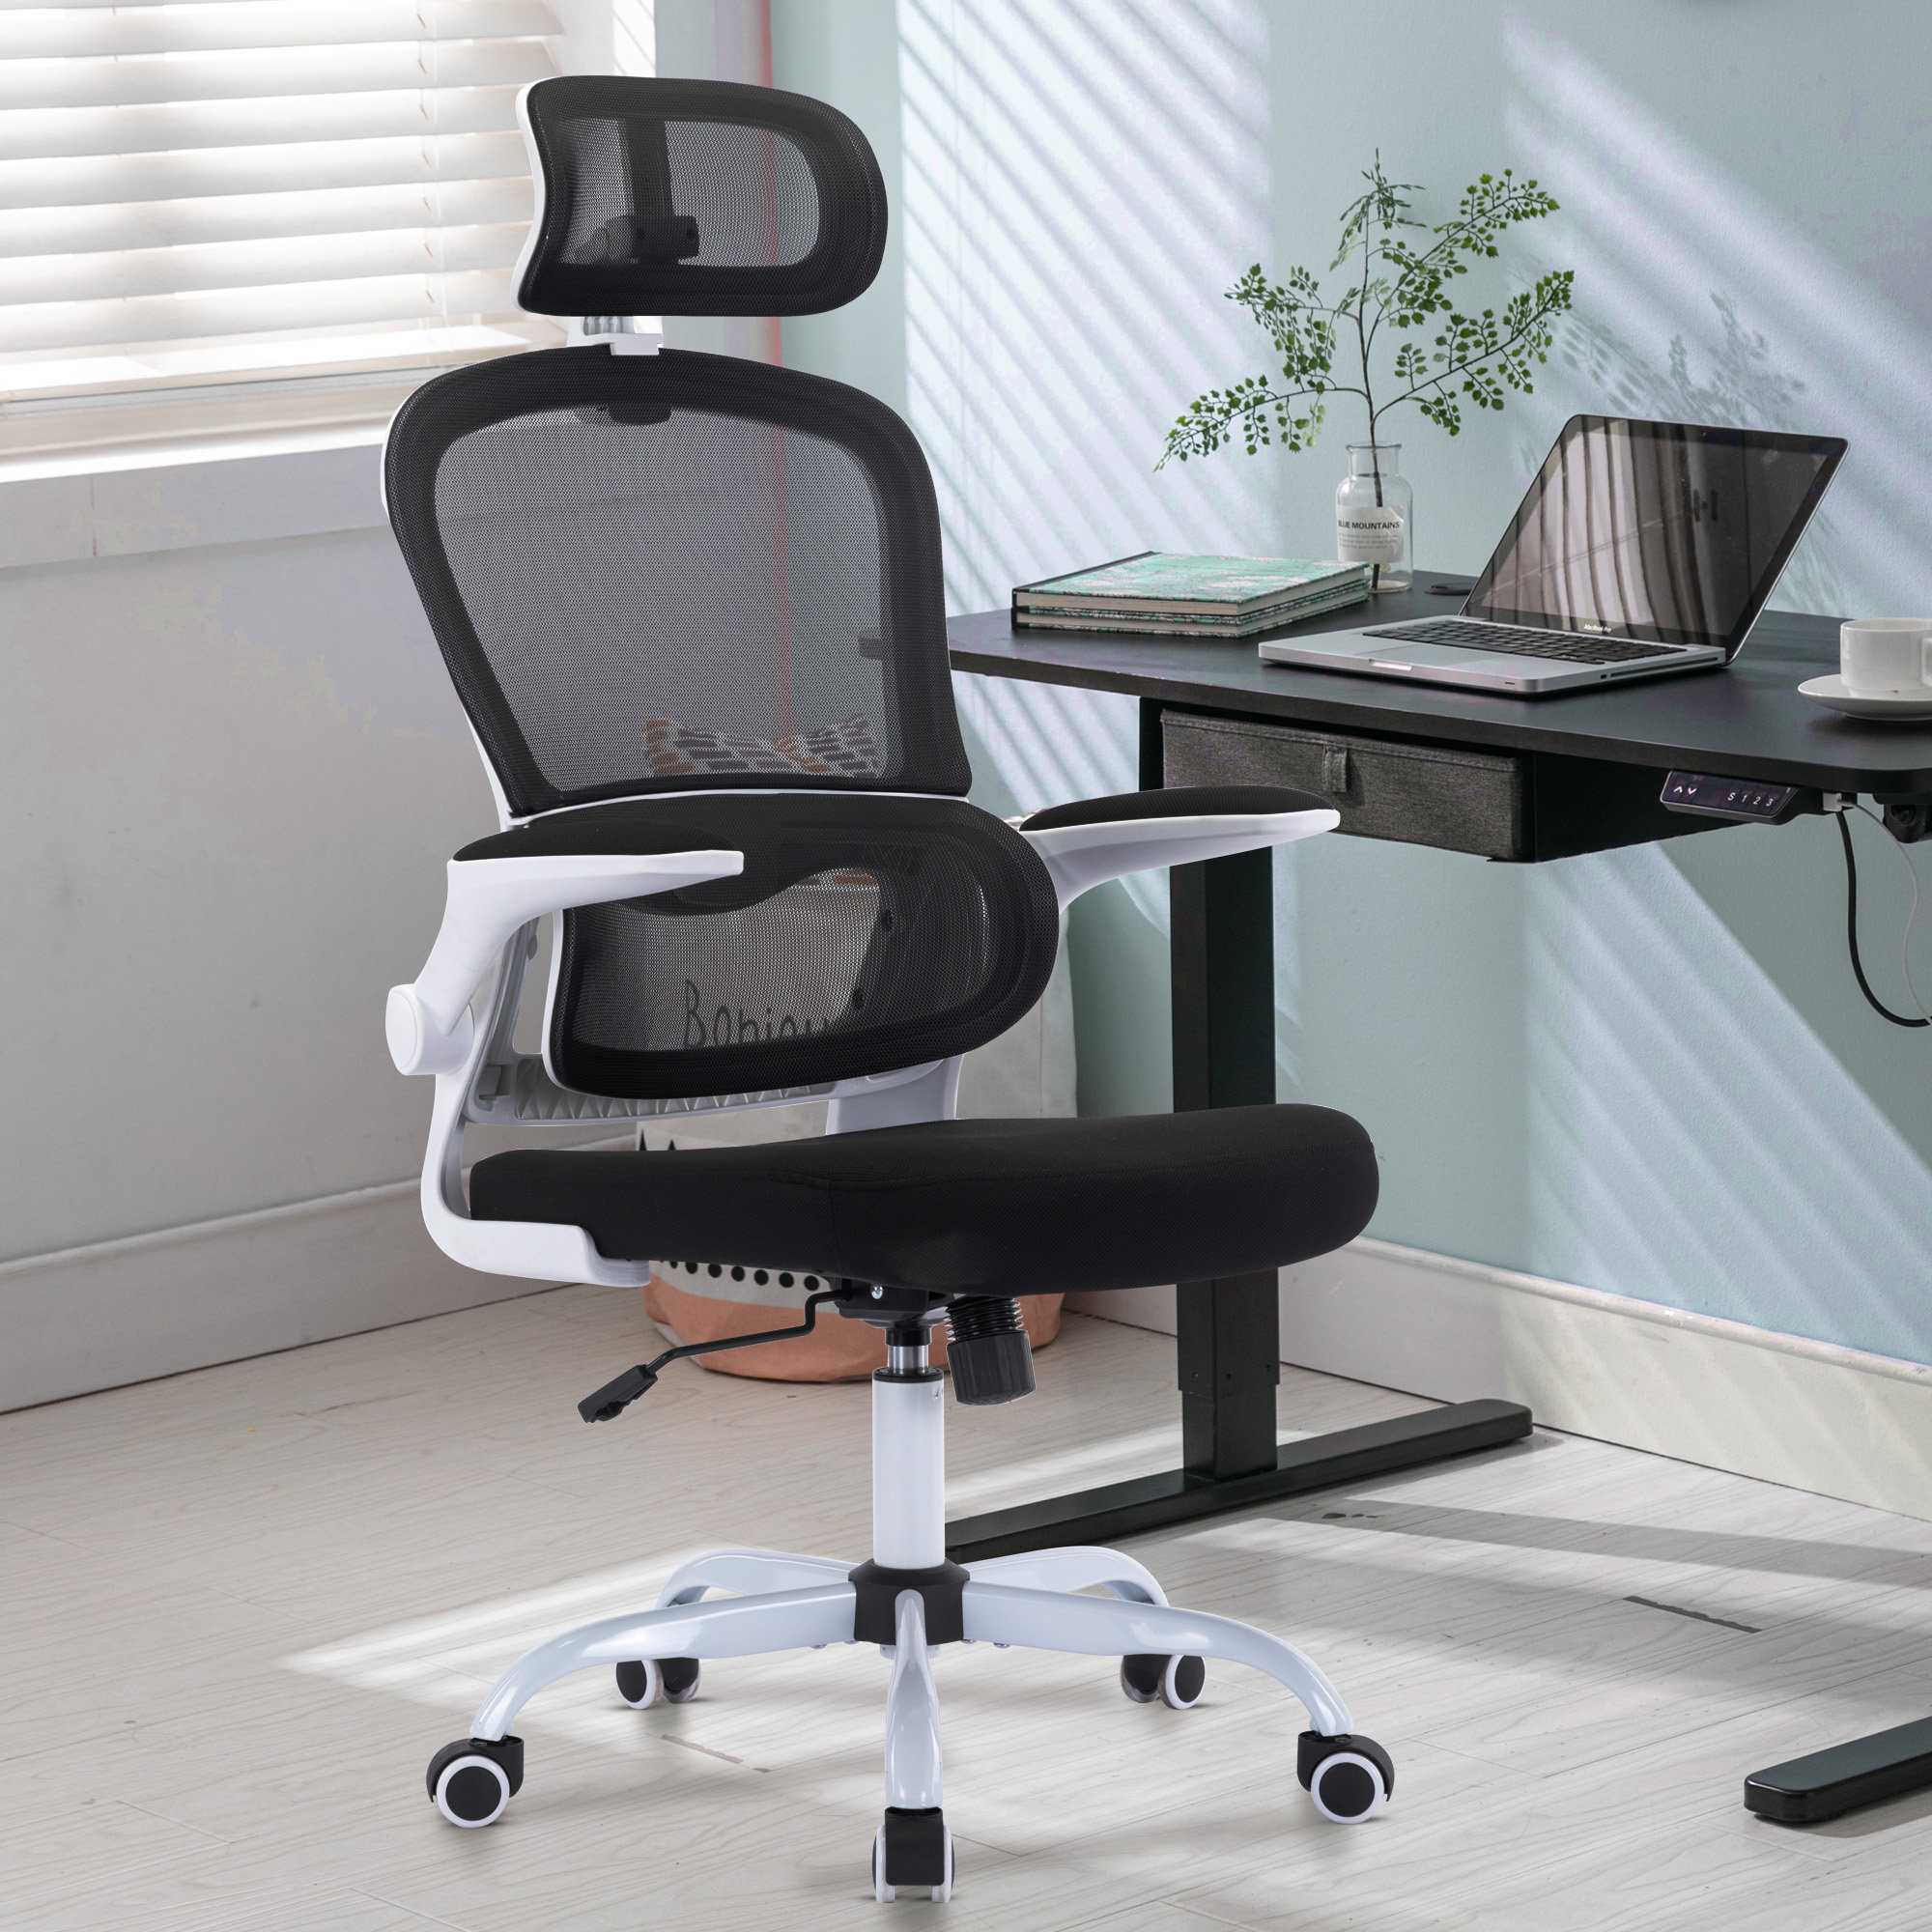 https://assets.wfcdn.com/im/92474683/compr-r85/2405/240577062/ergonomic-high-back-mesh-office-chair-with-wheels-adjustable-armrests-backrest-headrest.jpg